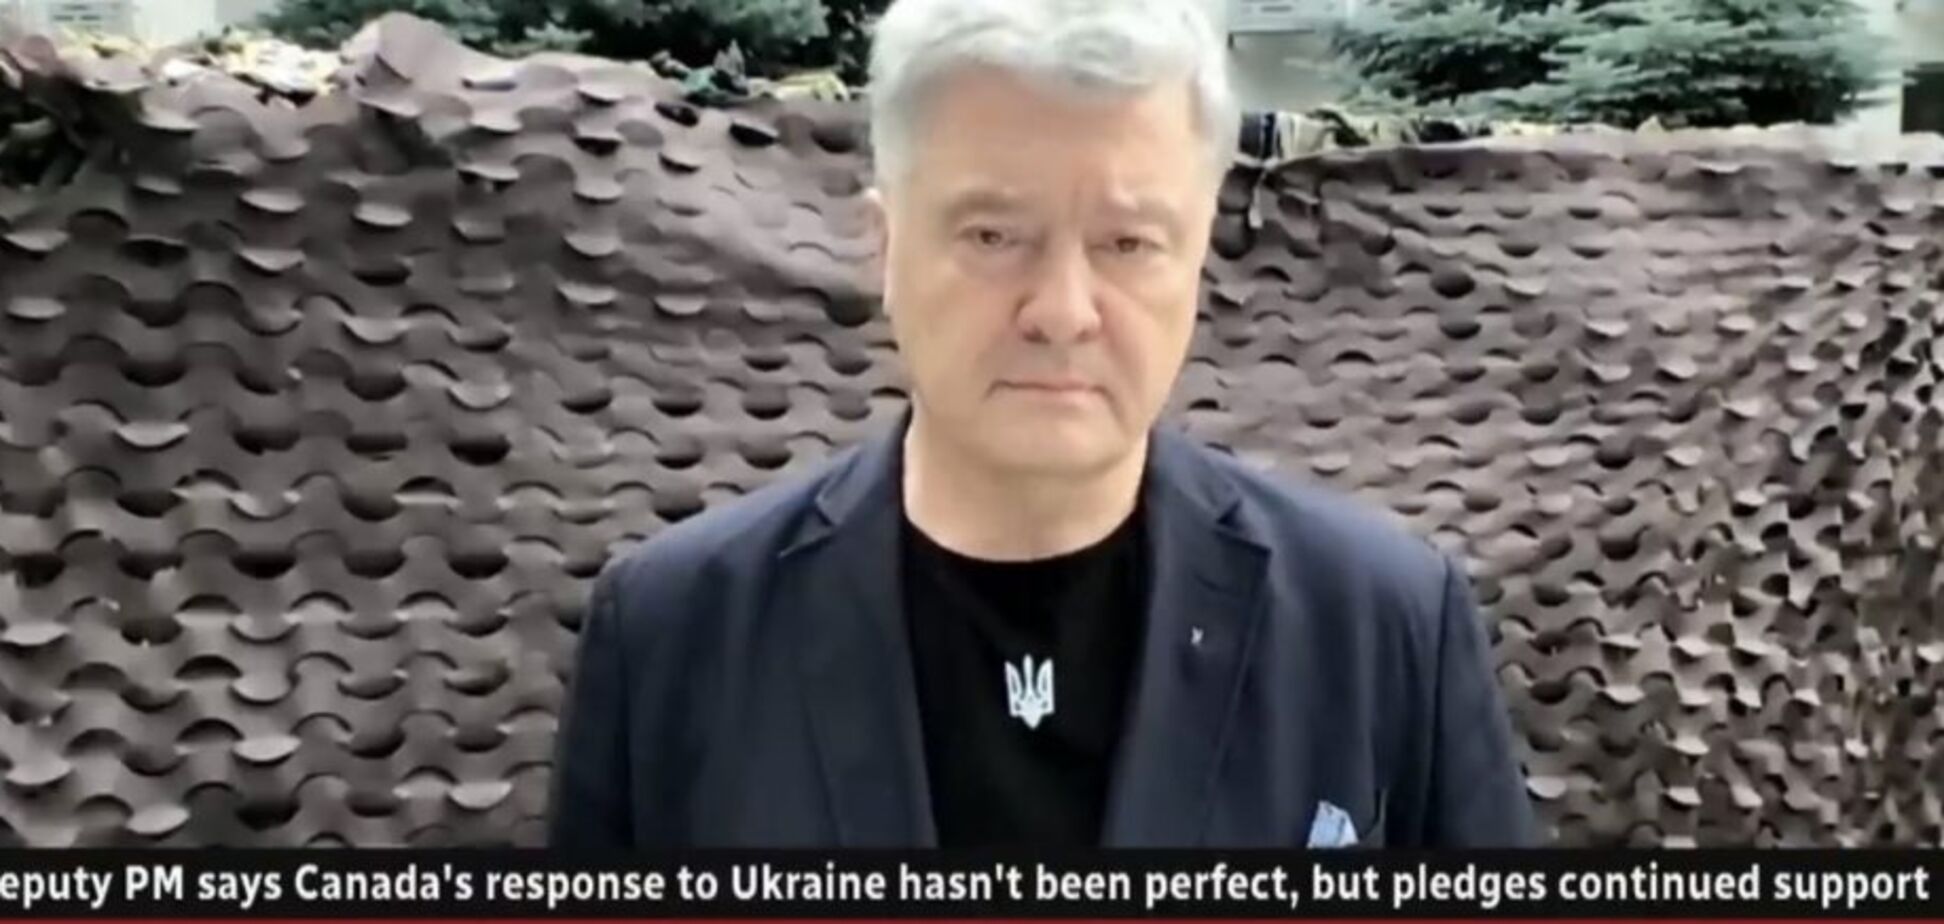 Еще больше оружия и тренировки украинских военных, – Порошенко на CBC News о необходимой помощи от Канады